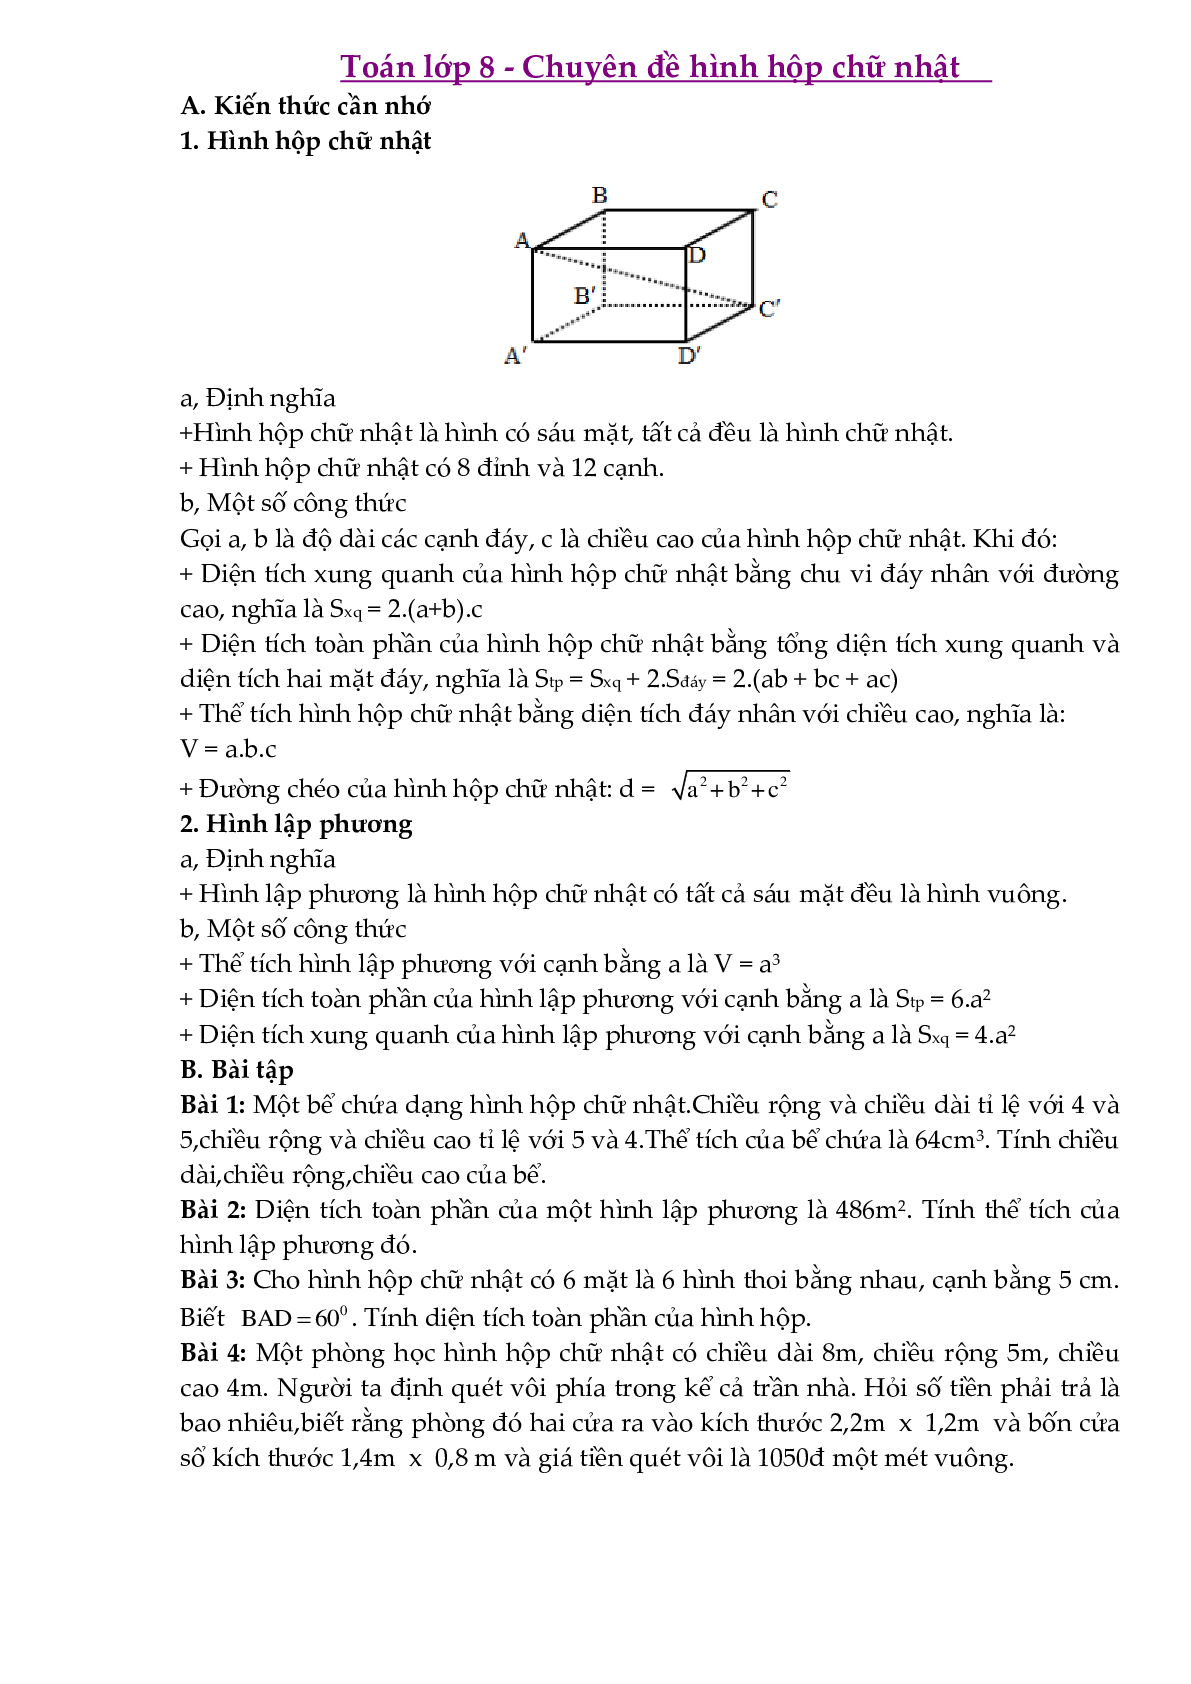 Chuyên đề Hình hộp chữ nhật môn Toán lớp 8 (trang 1)